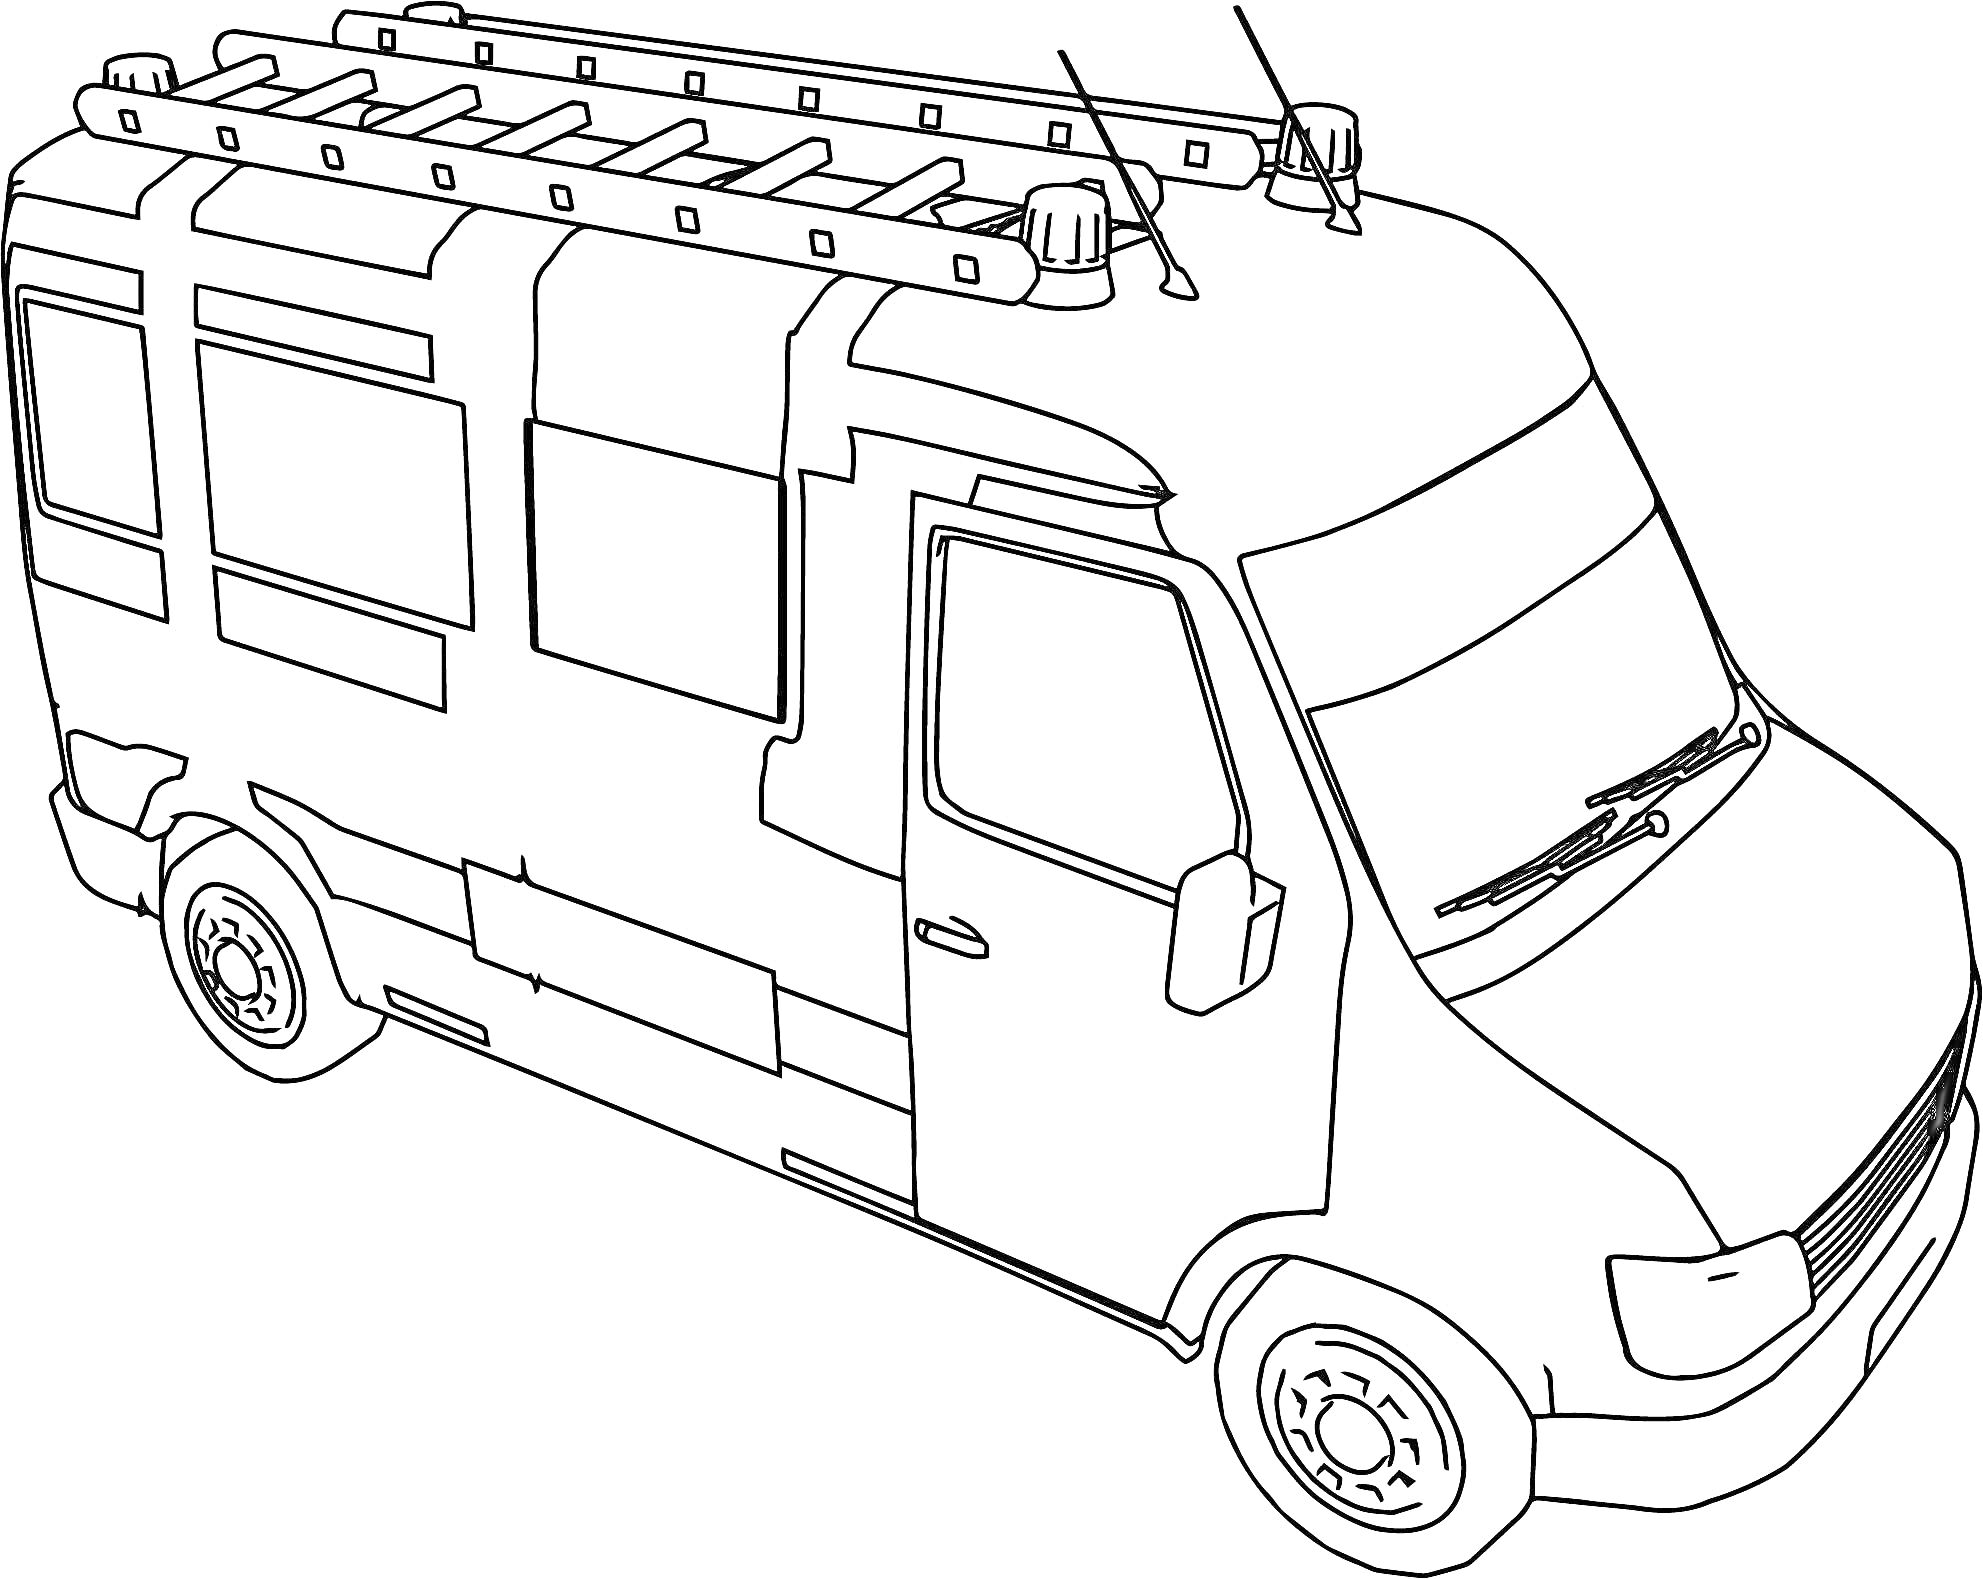  Фургон с багажником на крыше, окнами, дверью, колесами, антеннами и дворниками